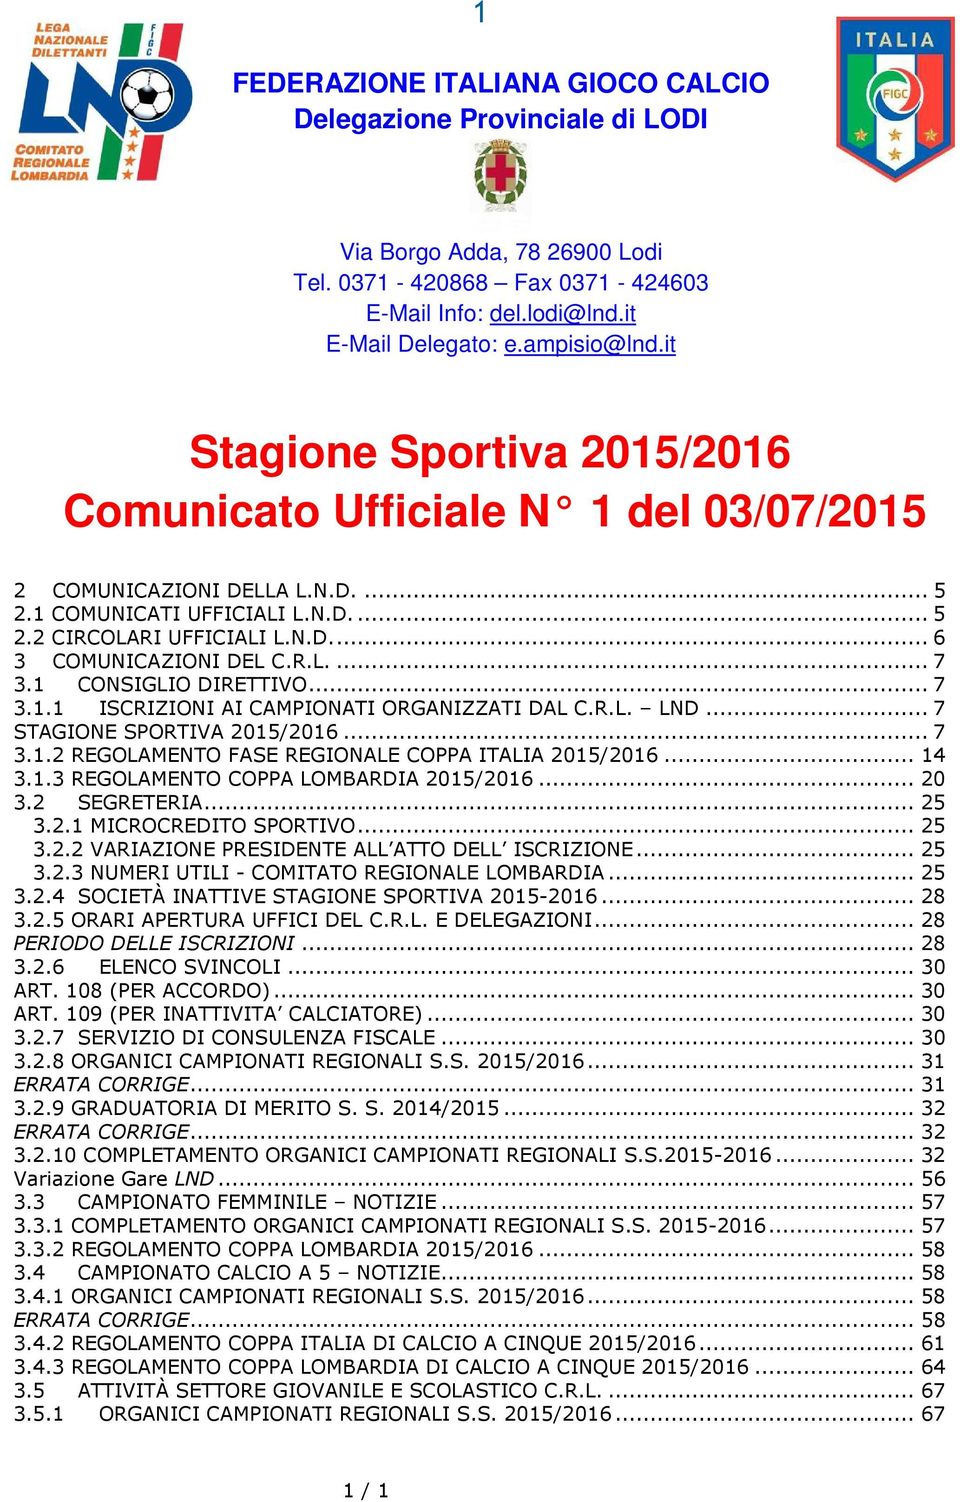 R.L.... 7 3.1 CONSIGLIO DIRETTIVO... 7 3.1.1 ISCRIZIONI AI CAMPIONATI ORGANIZZATI DAL C.R.L. LND... 7 STAGIONE SPORTIVA 2015/2016... 7 3.1.2 REGOLAMENTO FASE REGIONALE COPPA ITALIA 2015/2016... 14 3.